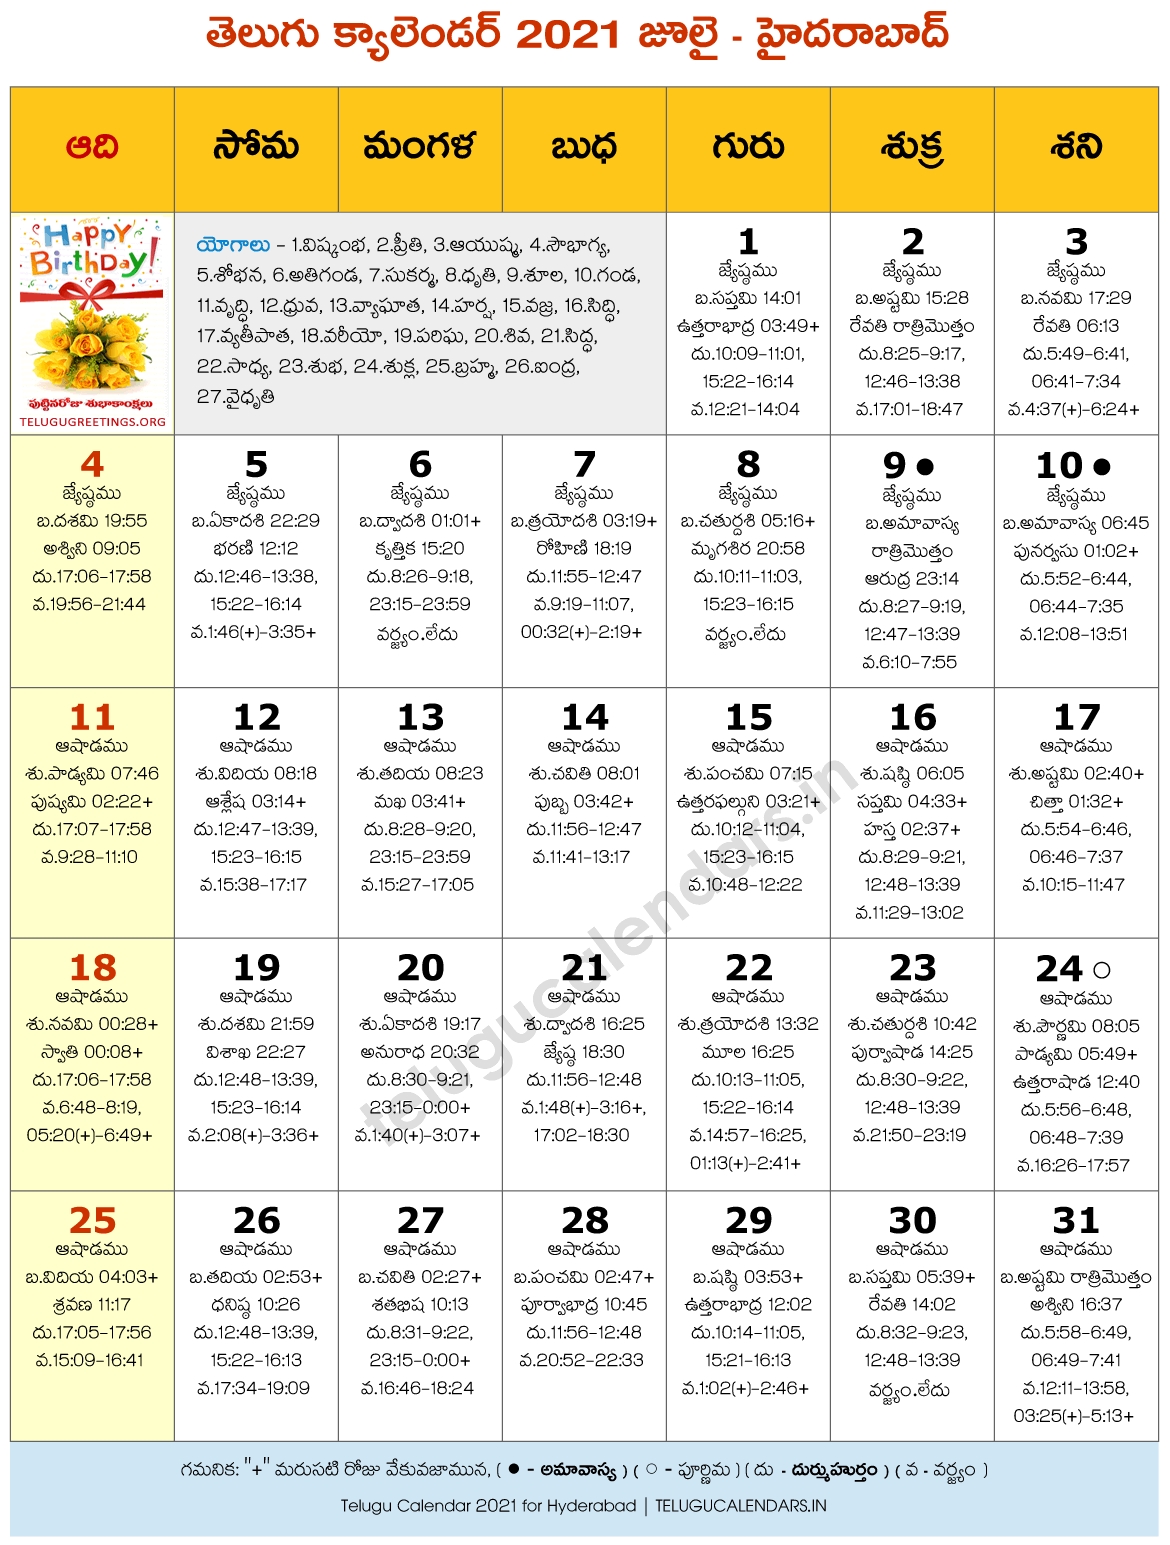 Hyderabad 2021 July Telugu Calendar | Telugu Calendars July 2021 Telugu Calendar Usa